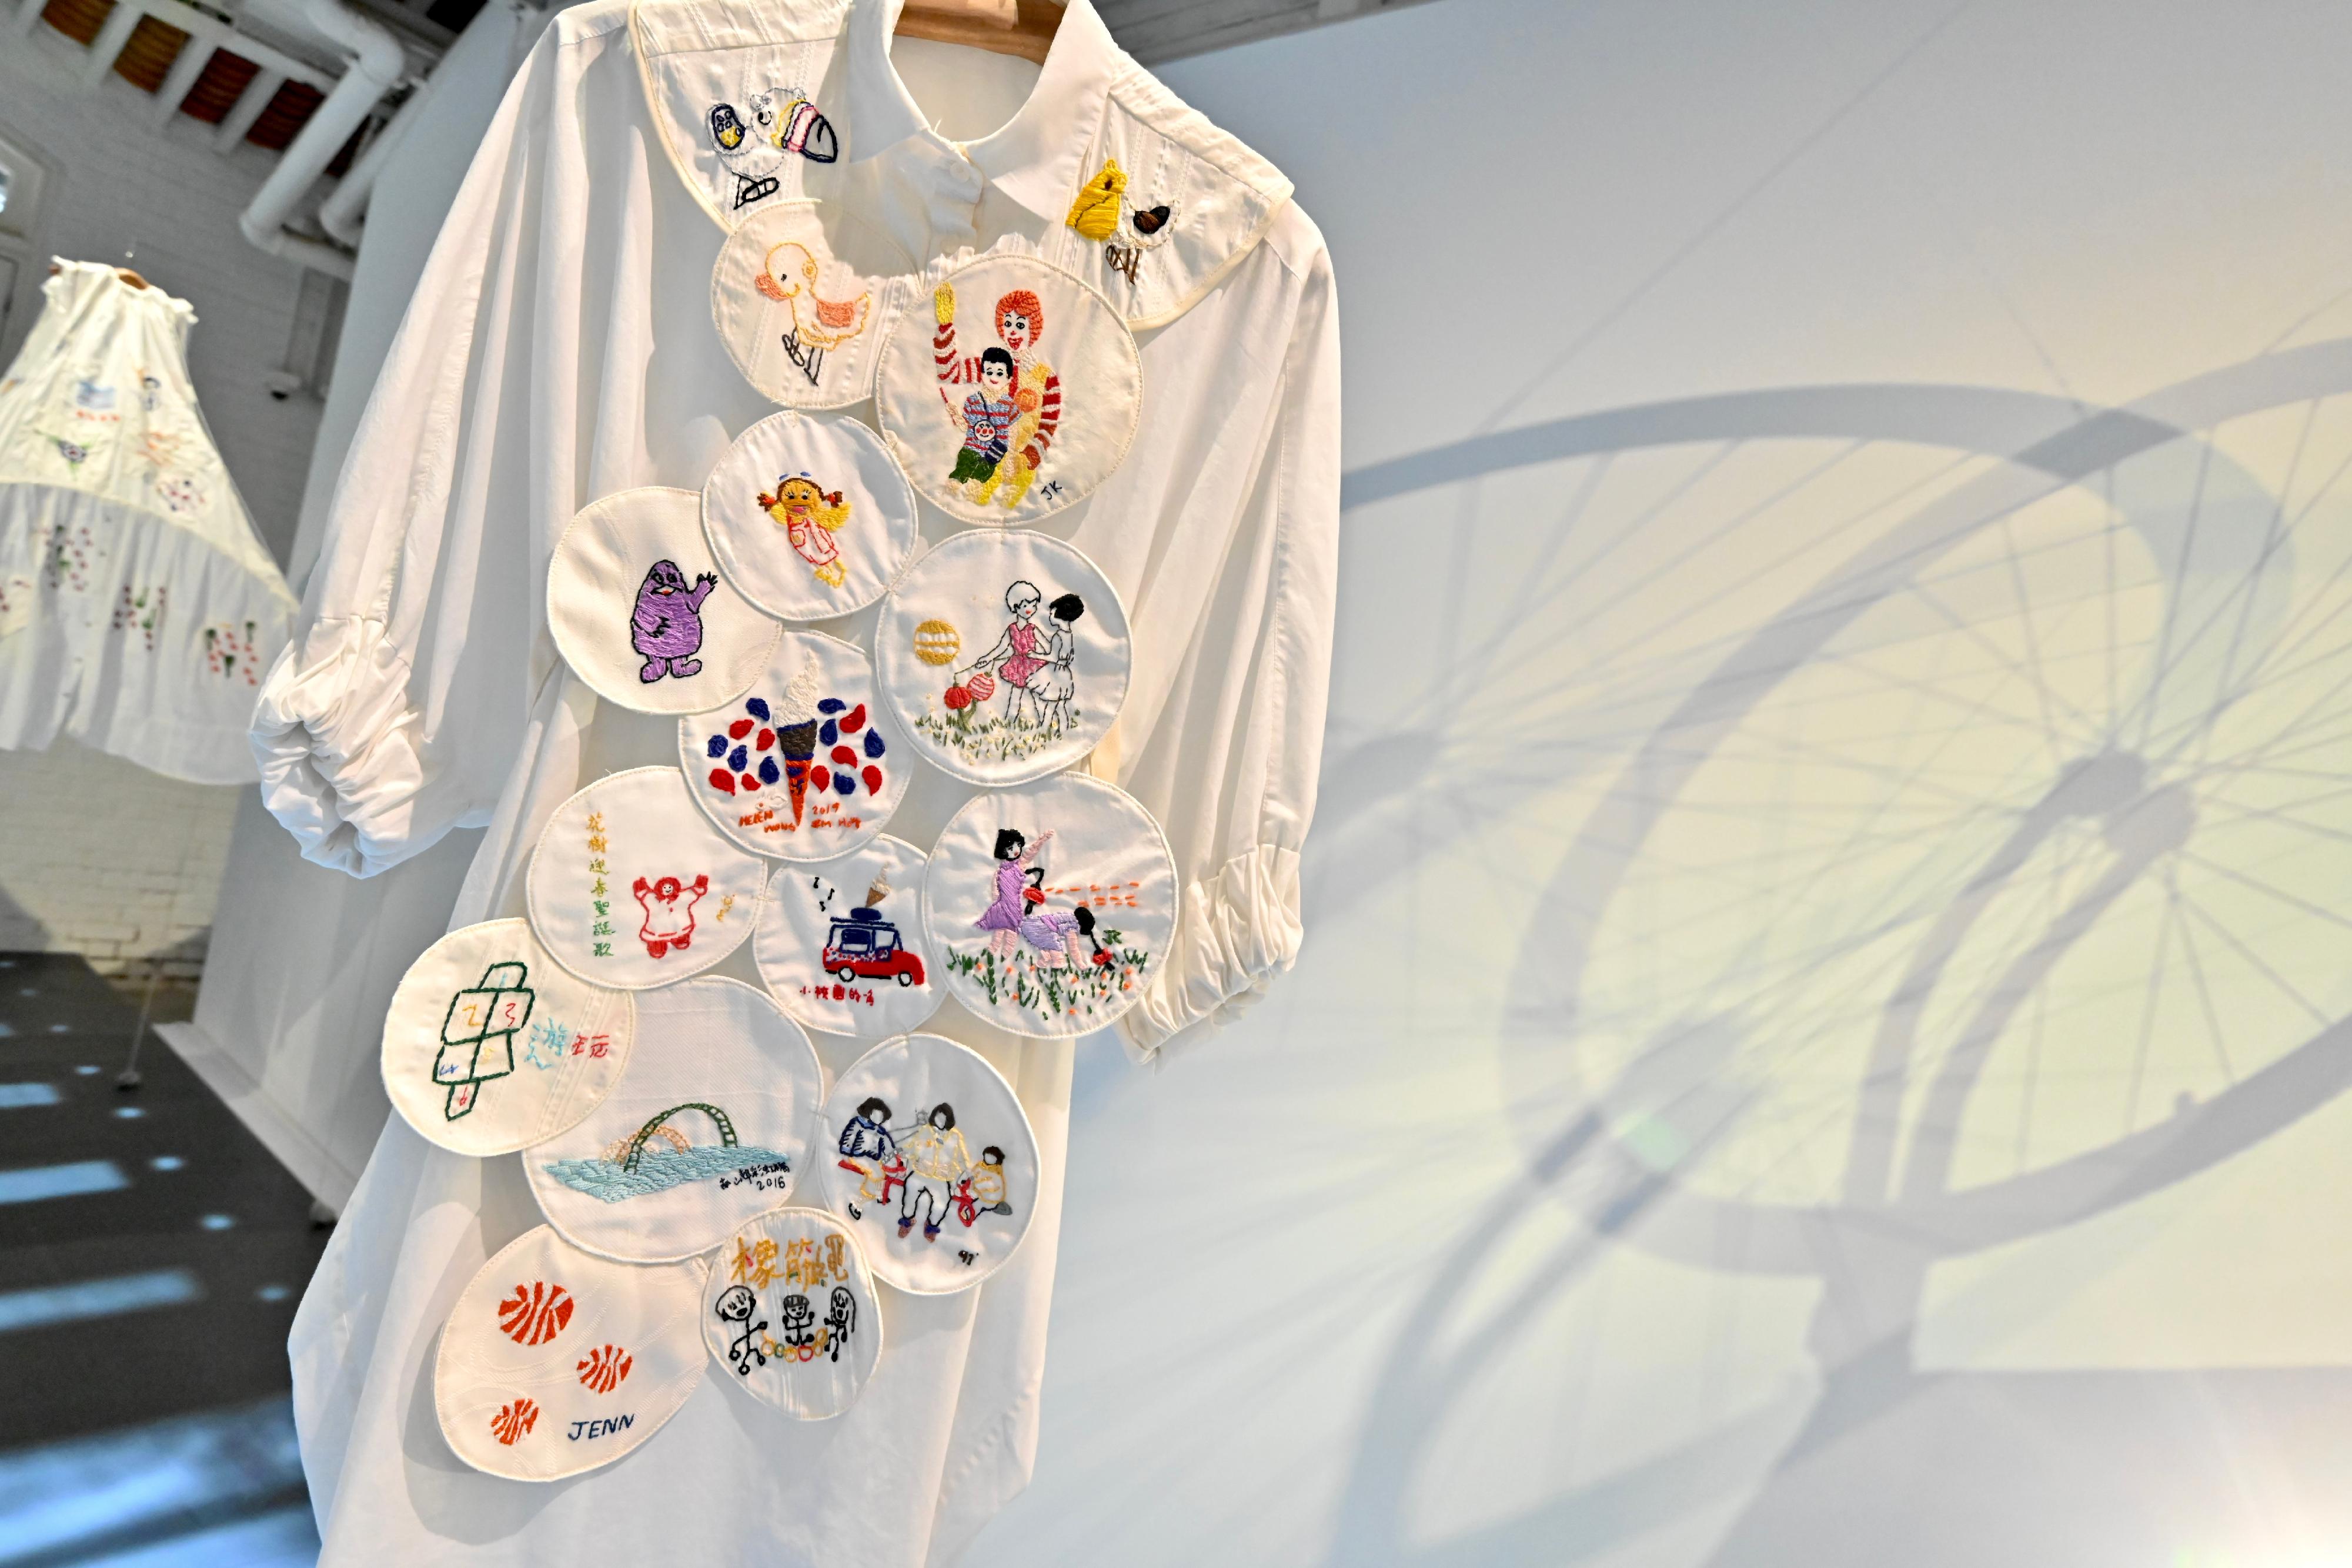 油街实现艺术空间明日（九月一日）至明年一月七日推出新展览「穿起时间」。图示时装设计师林蔚彦创作的其中一件再生衣物，其主题为「儿童乐园」，展示香港人儿时的集体回忆。